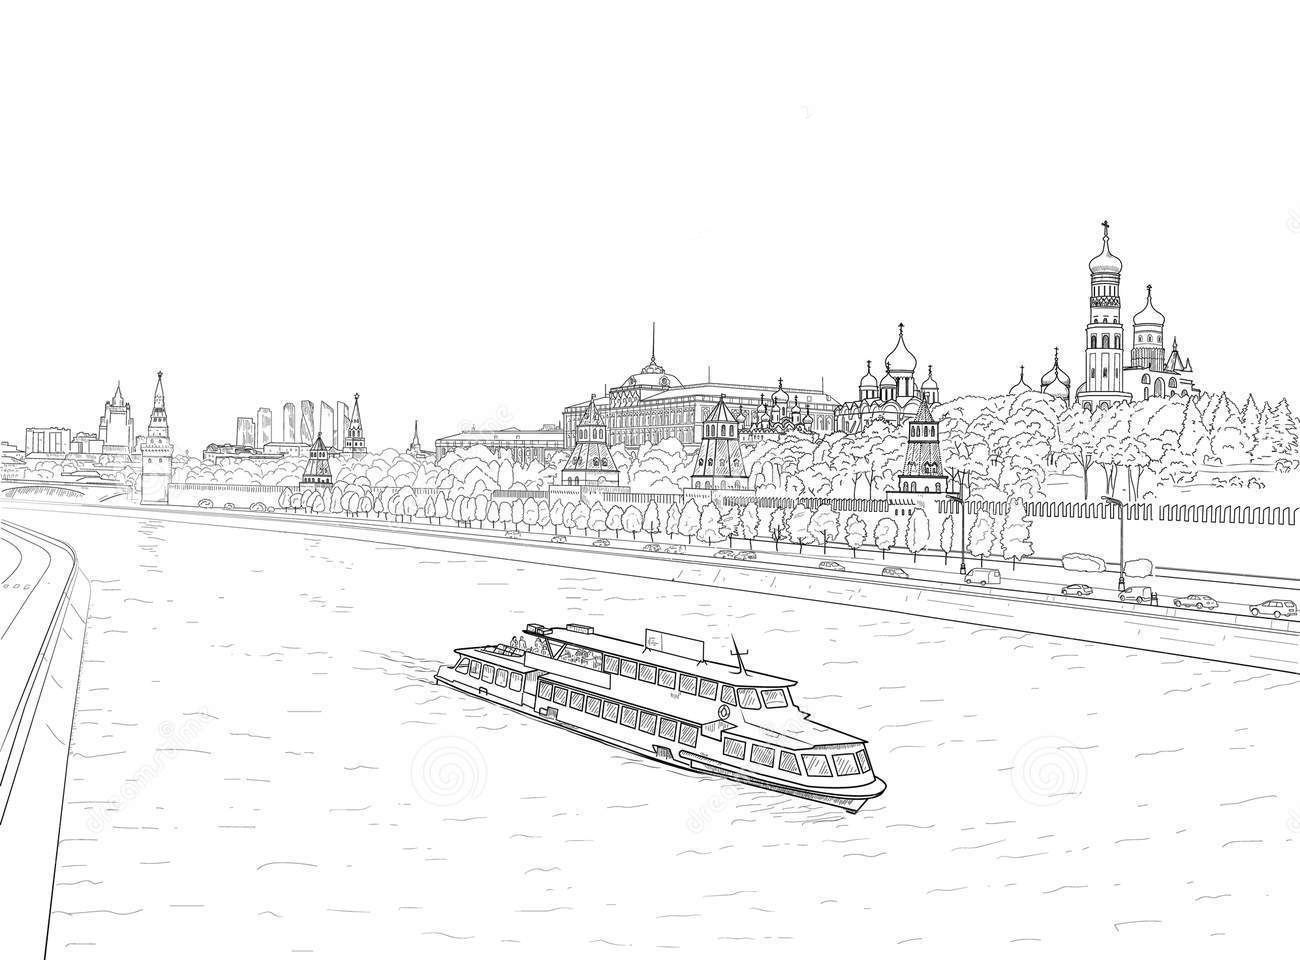 Открытка Москва. Вид на Кремлевскую набережную. Кремль, Москва-река, мост, автобус. 1956. (13889о)